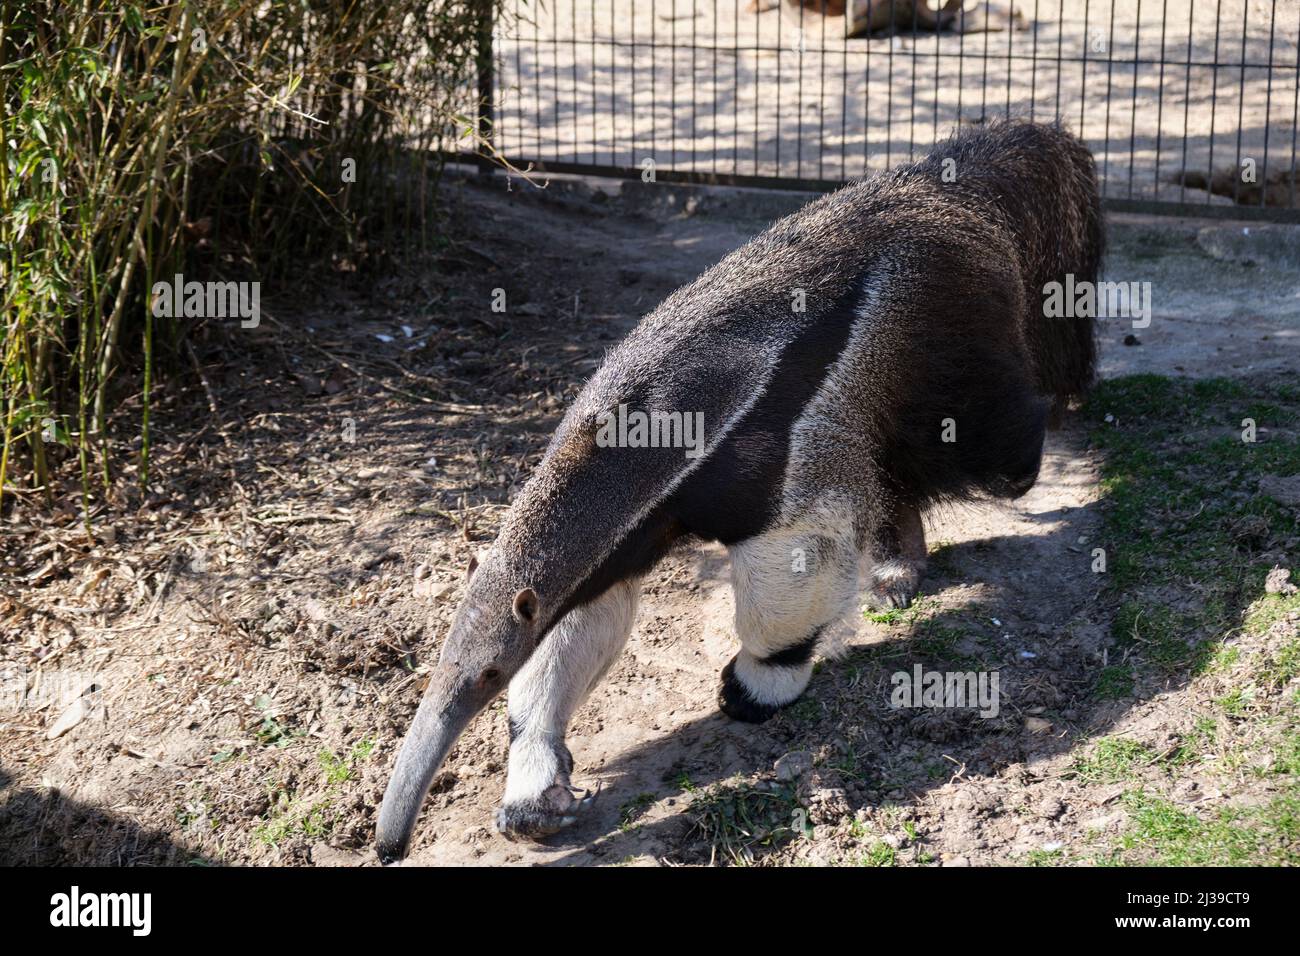 L'anteater gigante (Myrmechophaga tridactyla), noto anche come orso formico, un mammifero insettivoro originario dell'America Centrale e del Sud, presso lo Zoo Aquarium di Madrid. Foto Stock